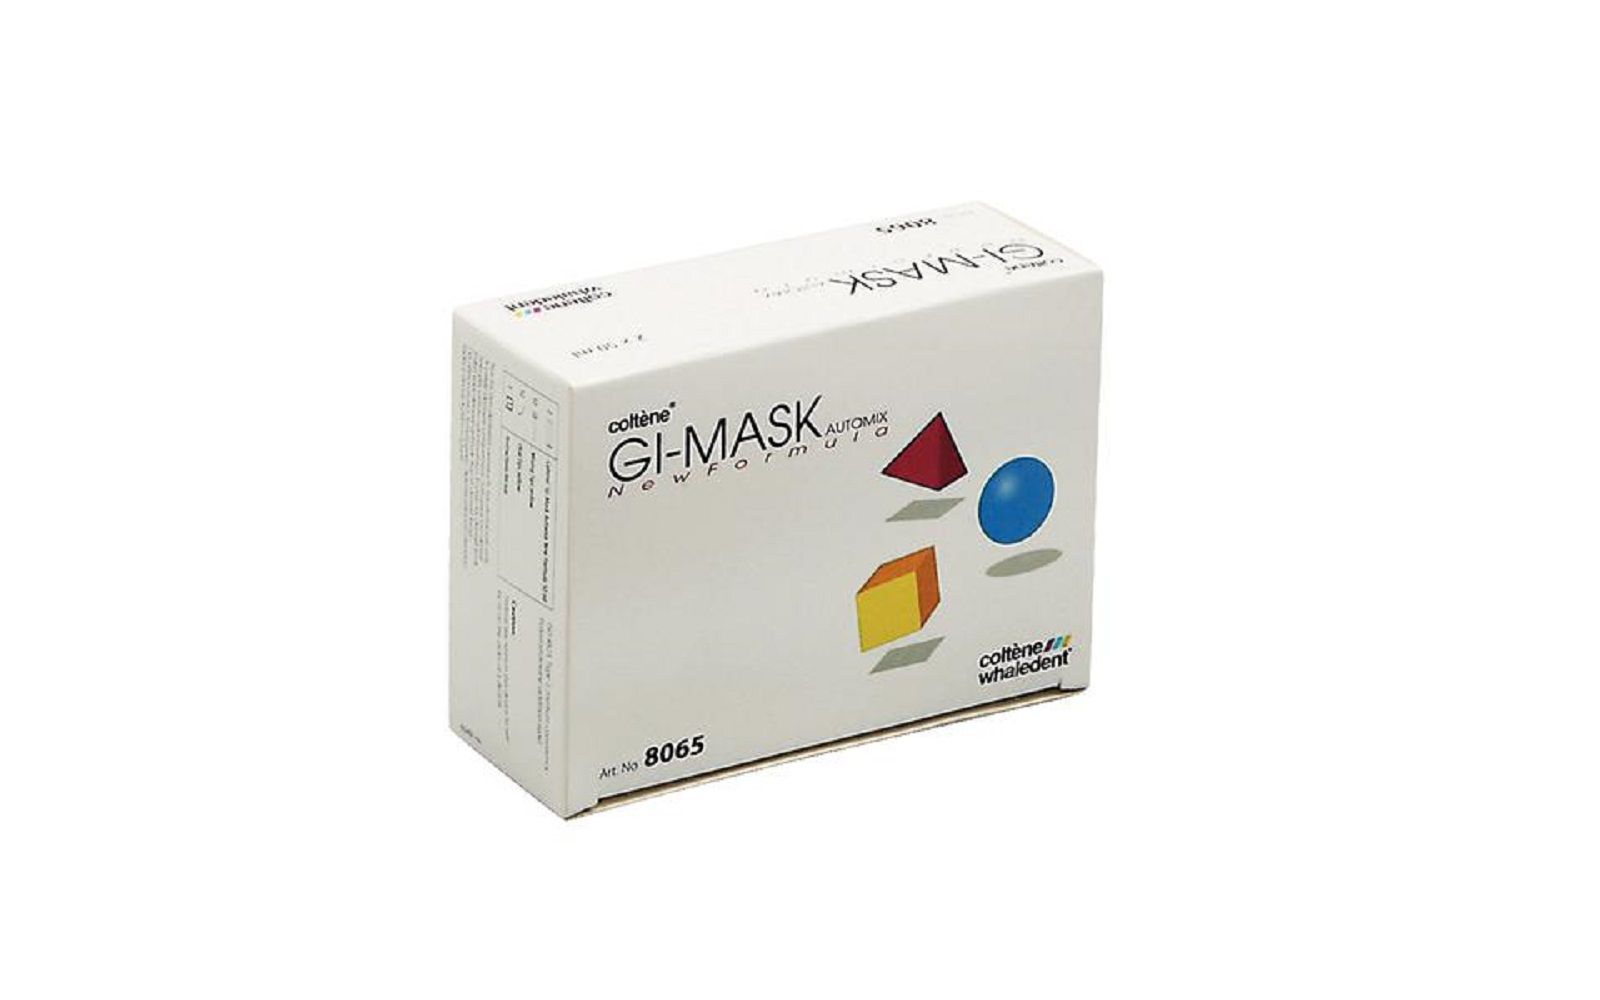 Gi-mask® automix new formula, refill kit